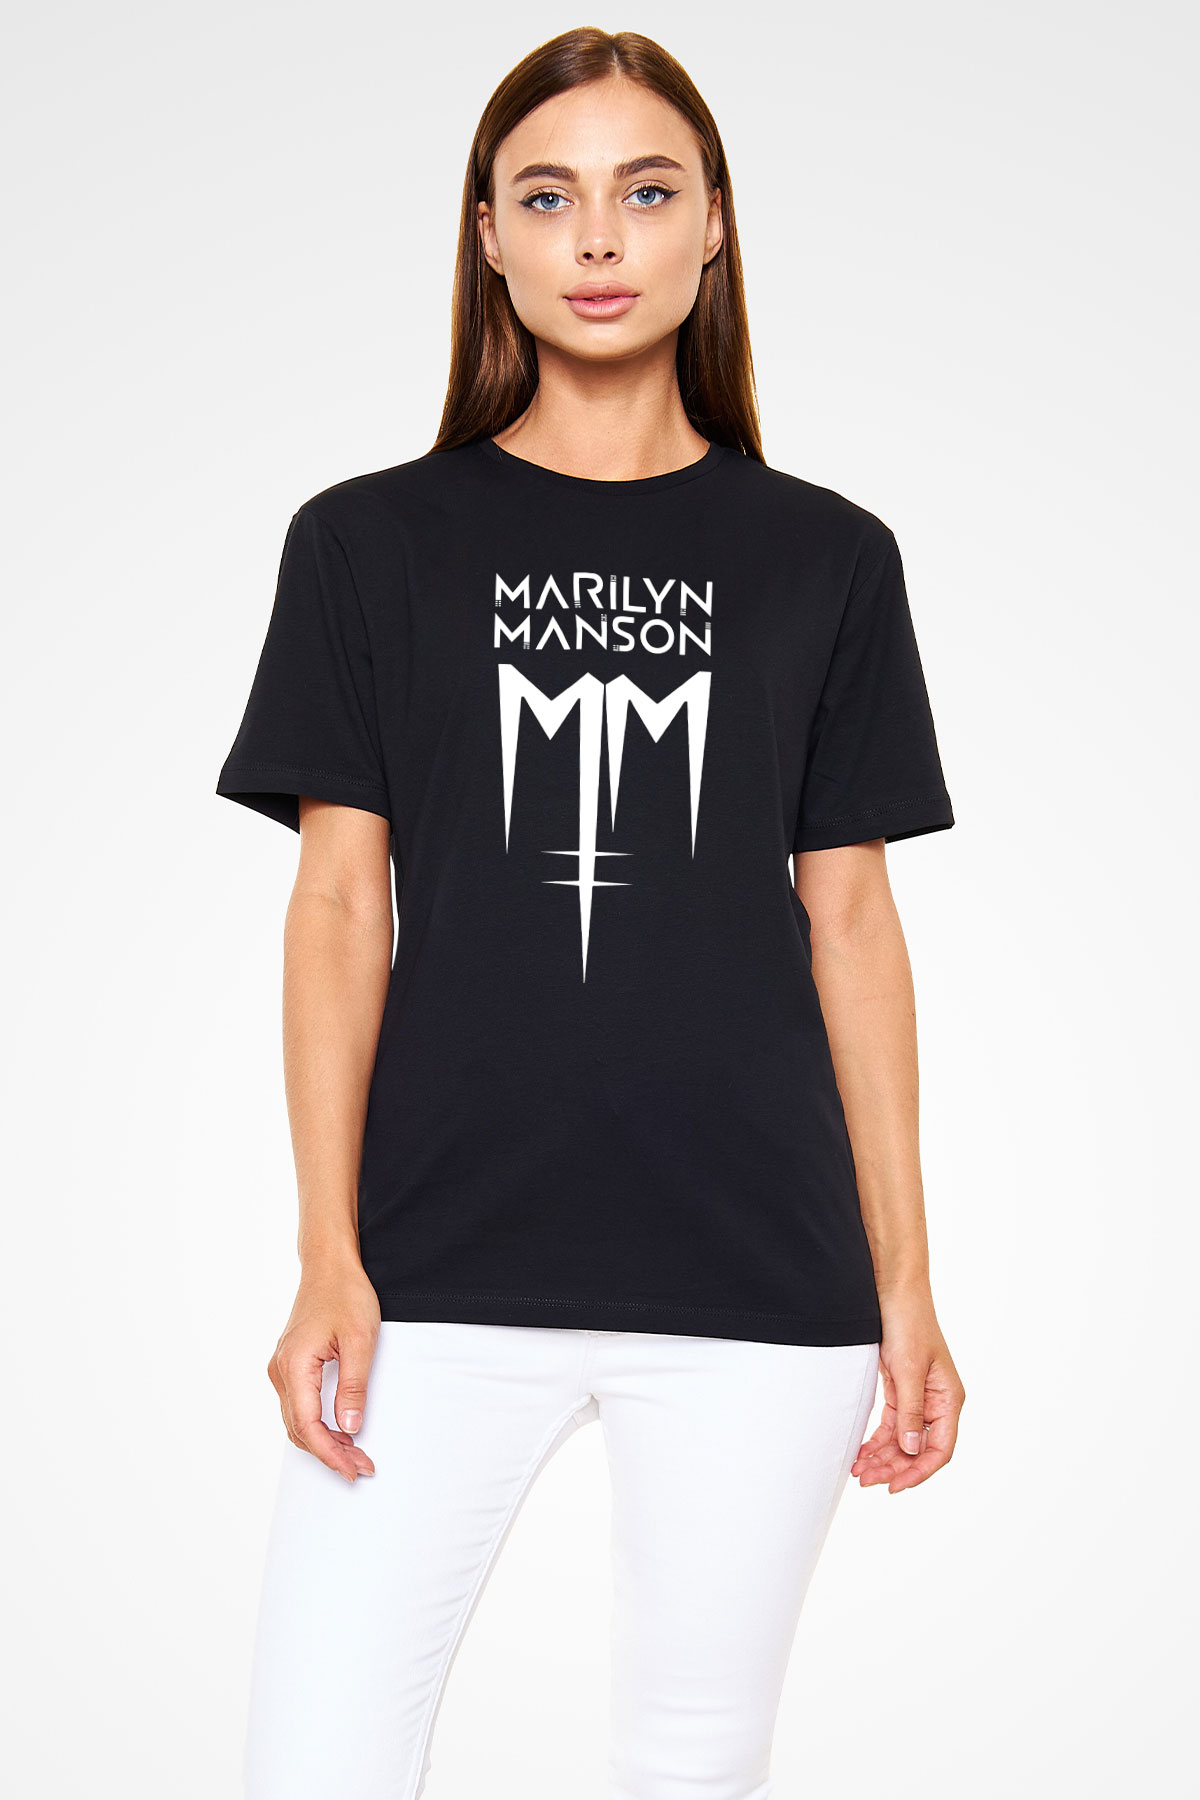 Marilyn Manson Siyah Unisex Tişört T-Shirt - TişörtFabrikası